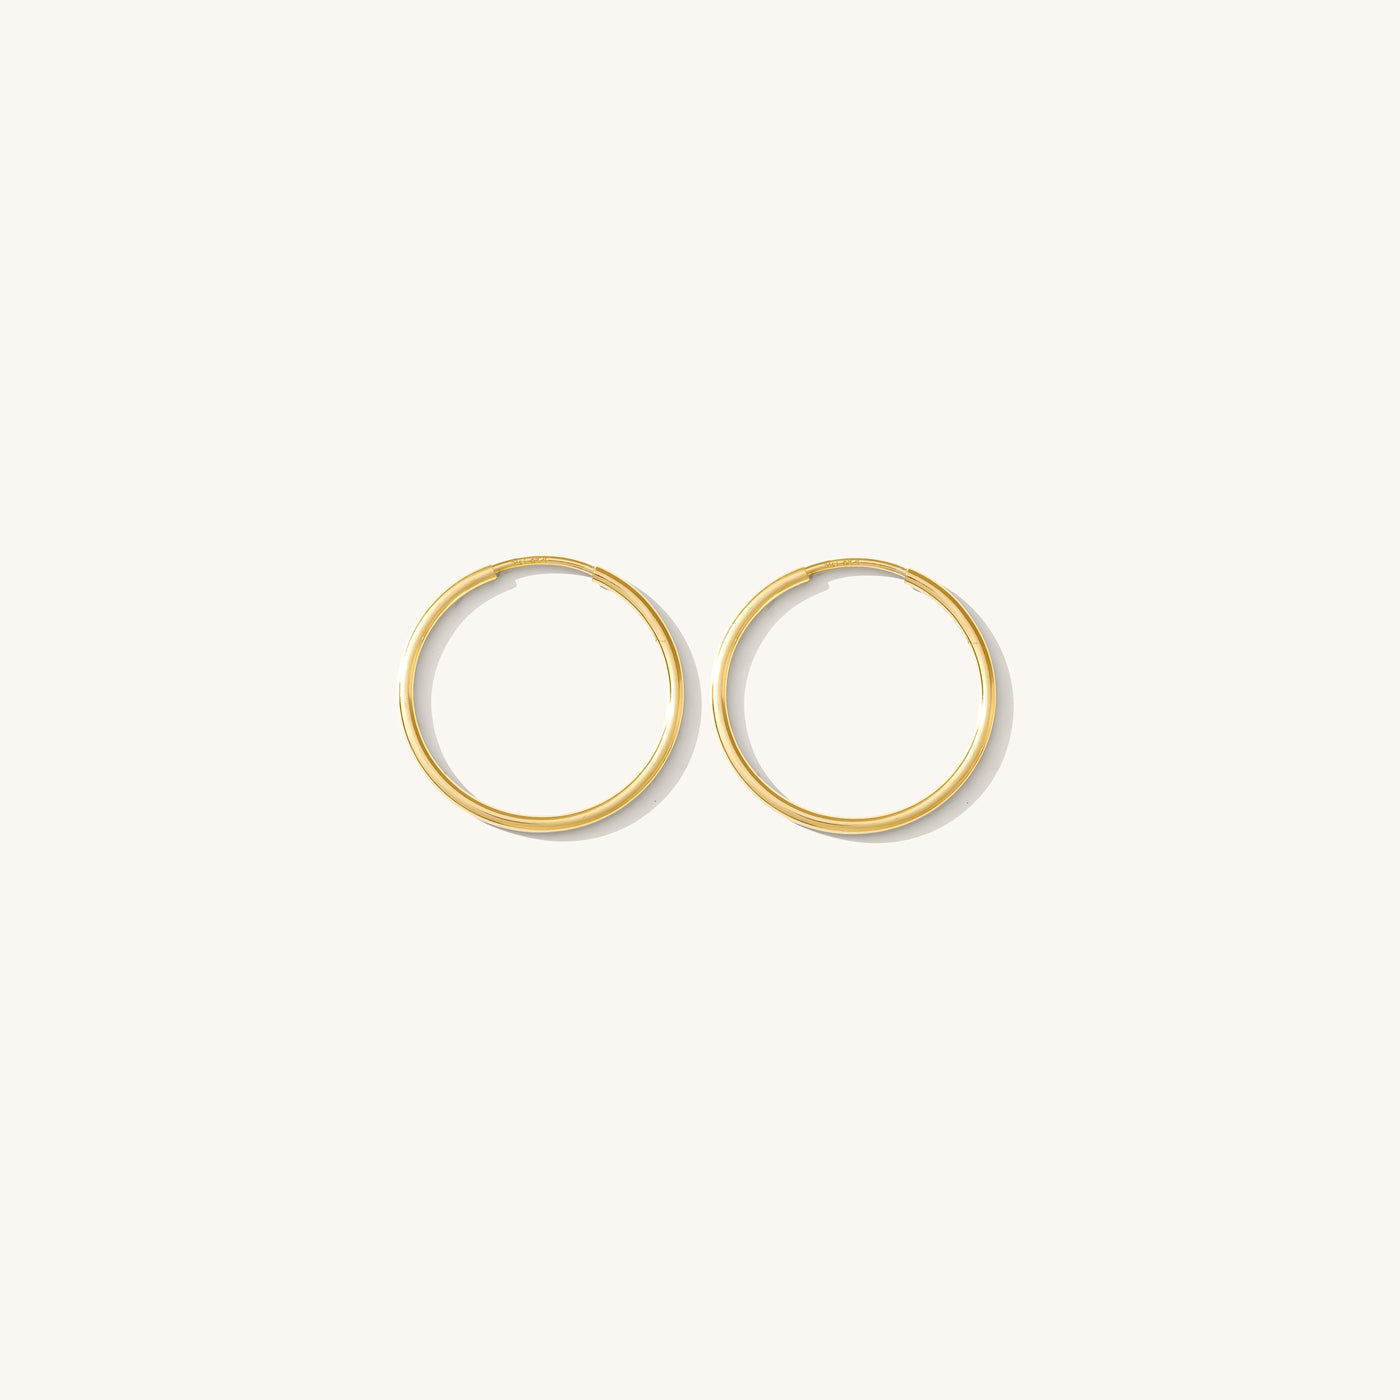 Medium (20mm) Thin Hoop Earrings | Simple & Dainty Jewelry